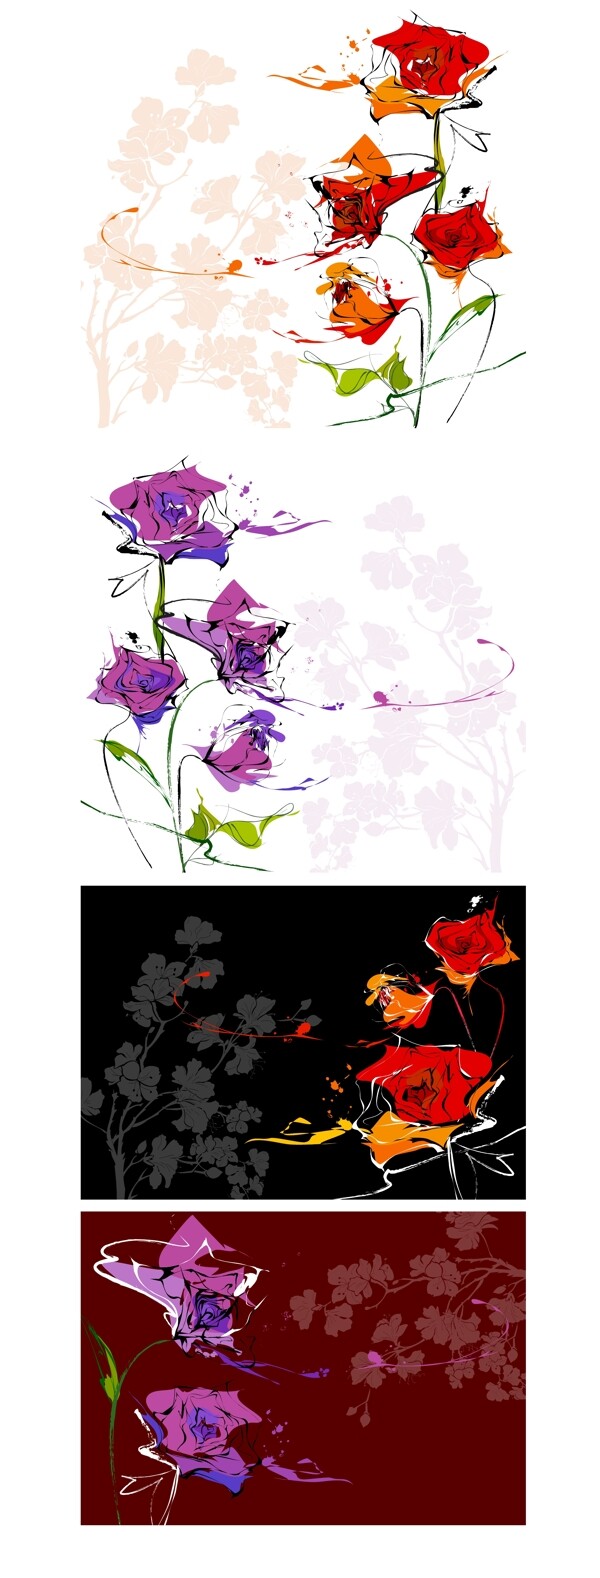 一些手绘花卉背景矢量素材